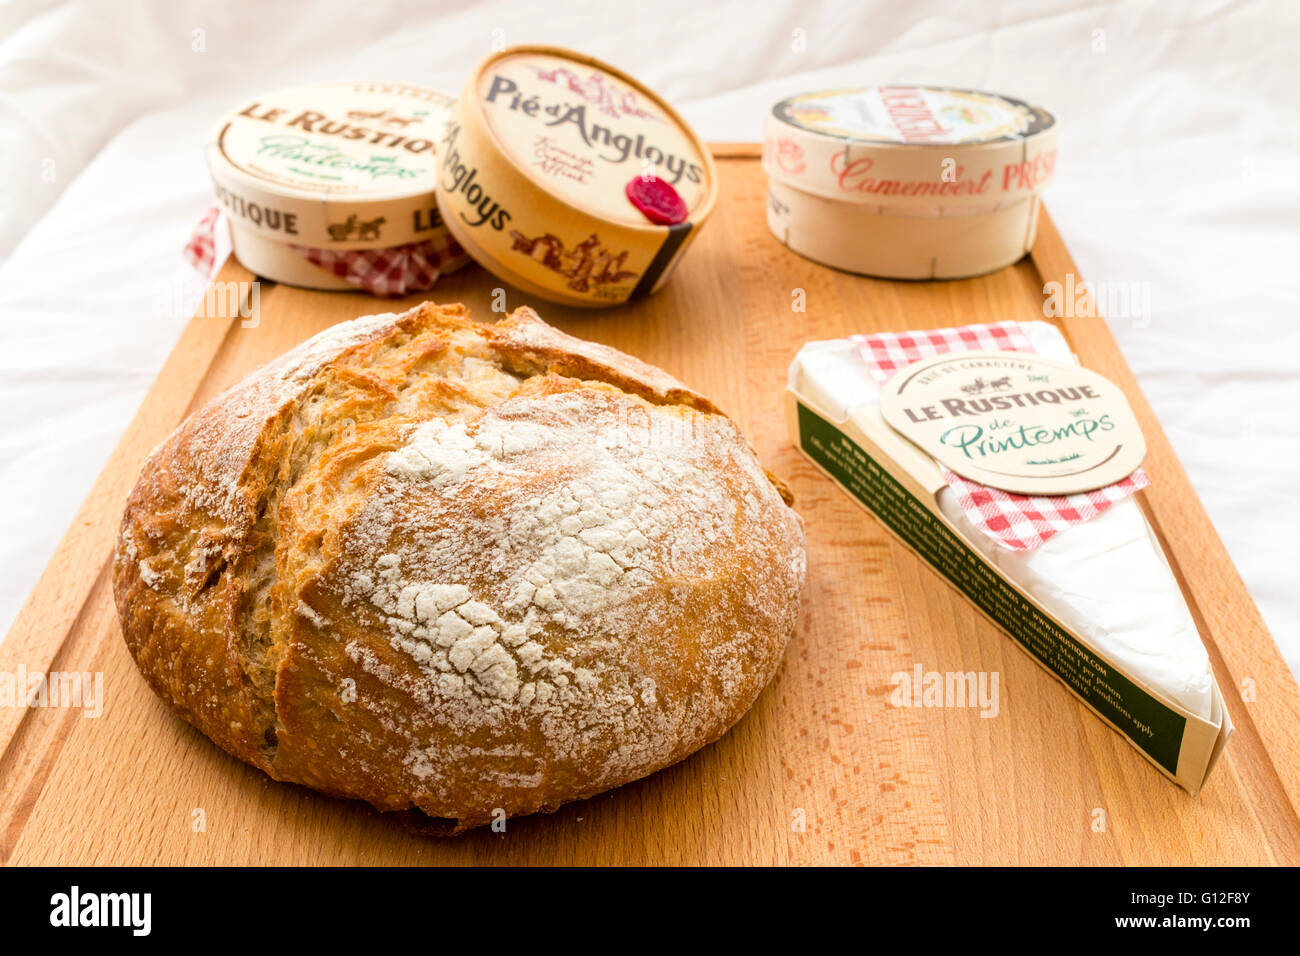 Les fromages français, en boîte et emballé, sur planche en bois rond avec du pain au levain pain. Camembert, Brie, diverses marques. Fond tissu blanc. Banque D'Images